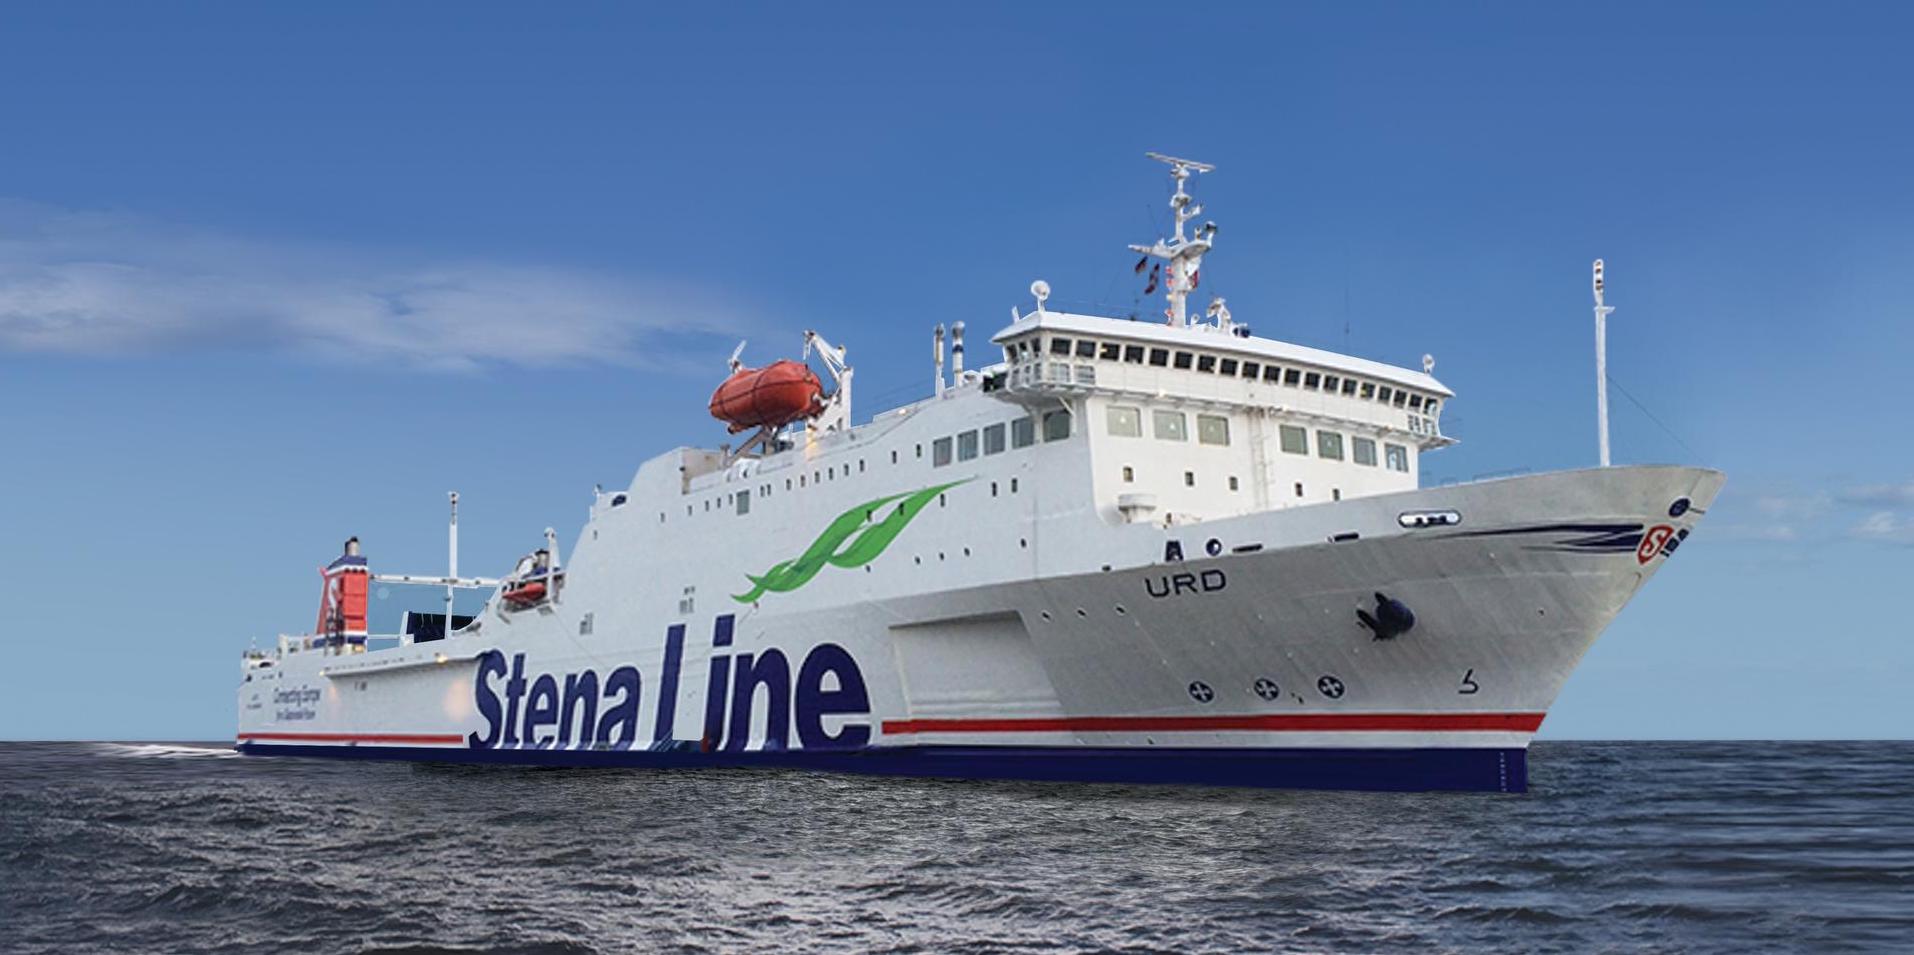 Φωτογραφία του πλοίου Stena Line - Urd